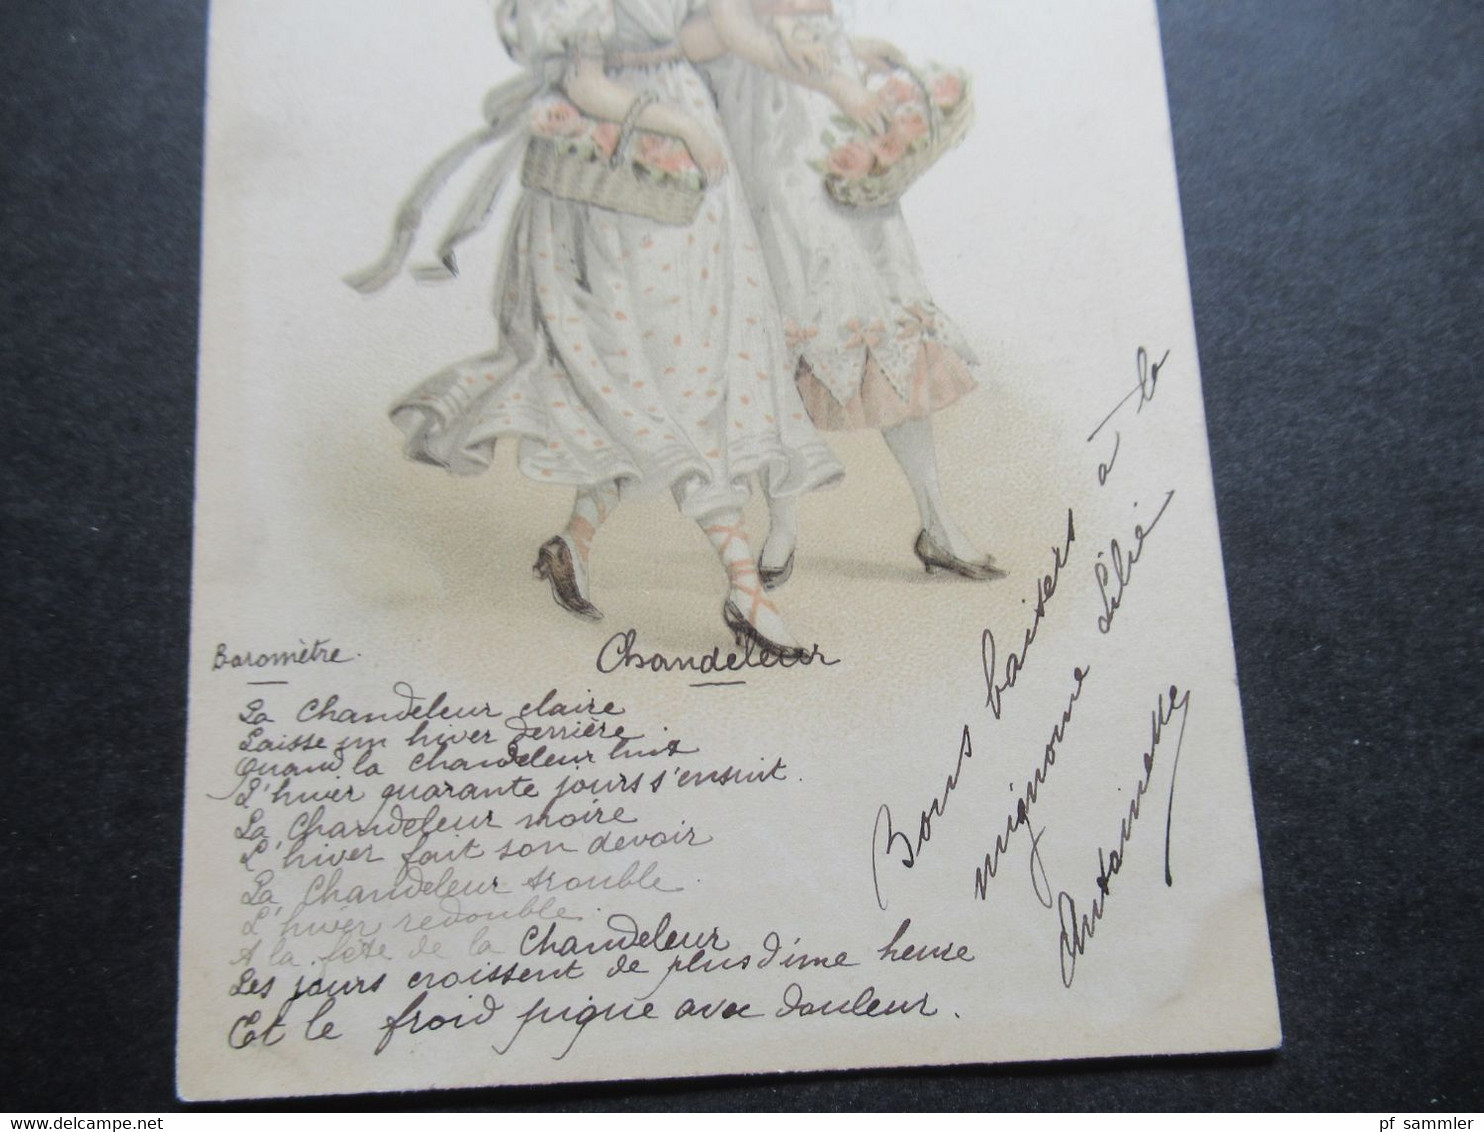 Litho Frankreich 1901 2 Damen / Junge Frauen Im Kleid Mit Blumenkorb Chandeleur Stempel Angers Maine Et Loire - People